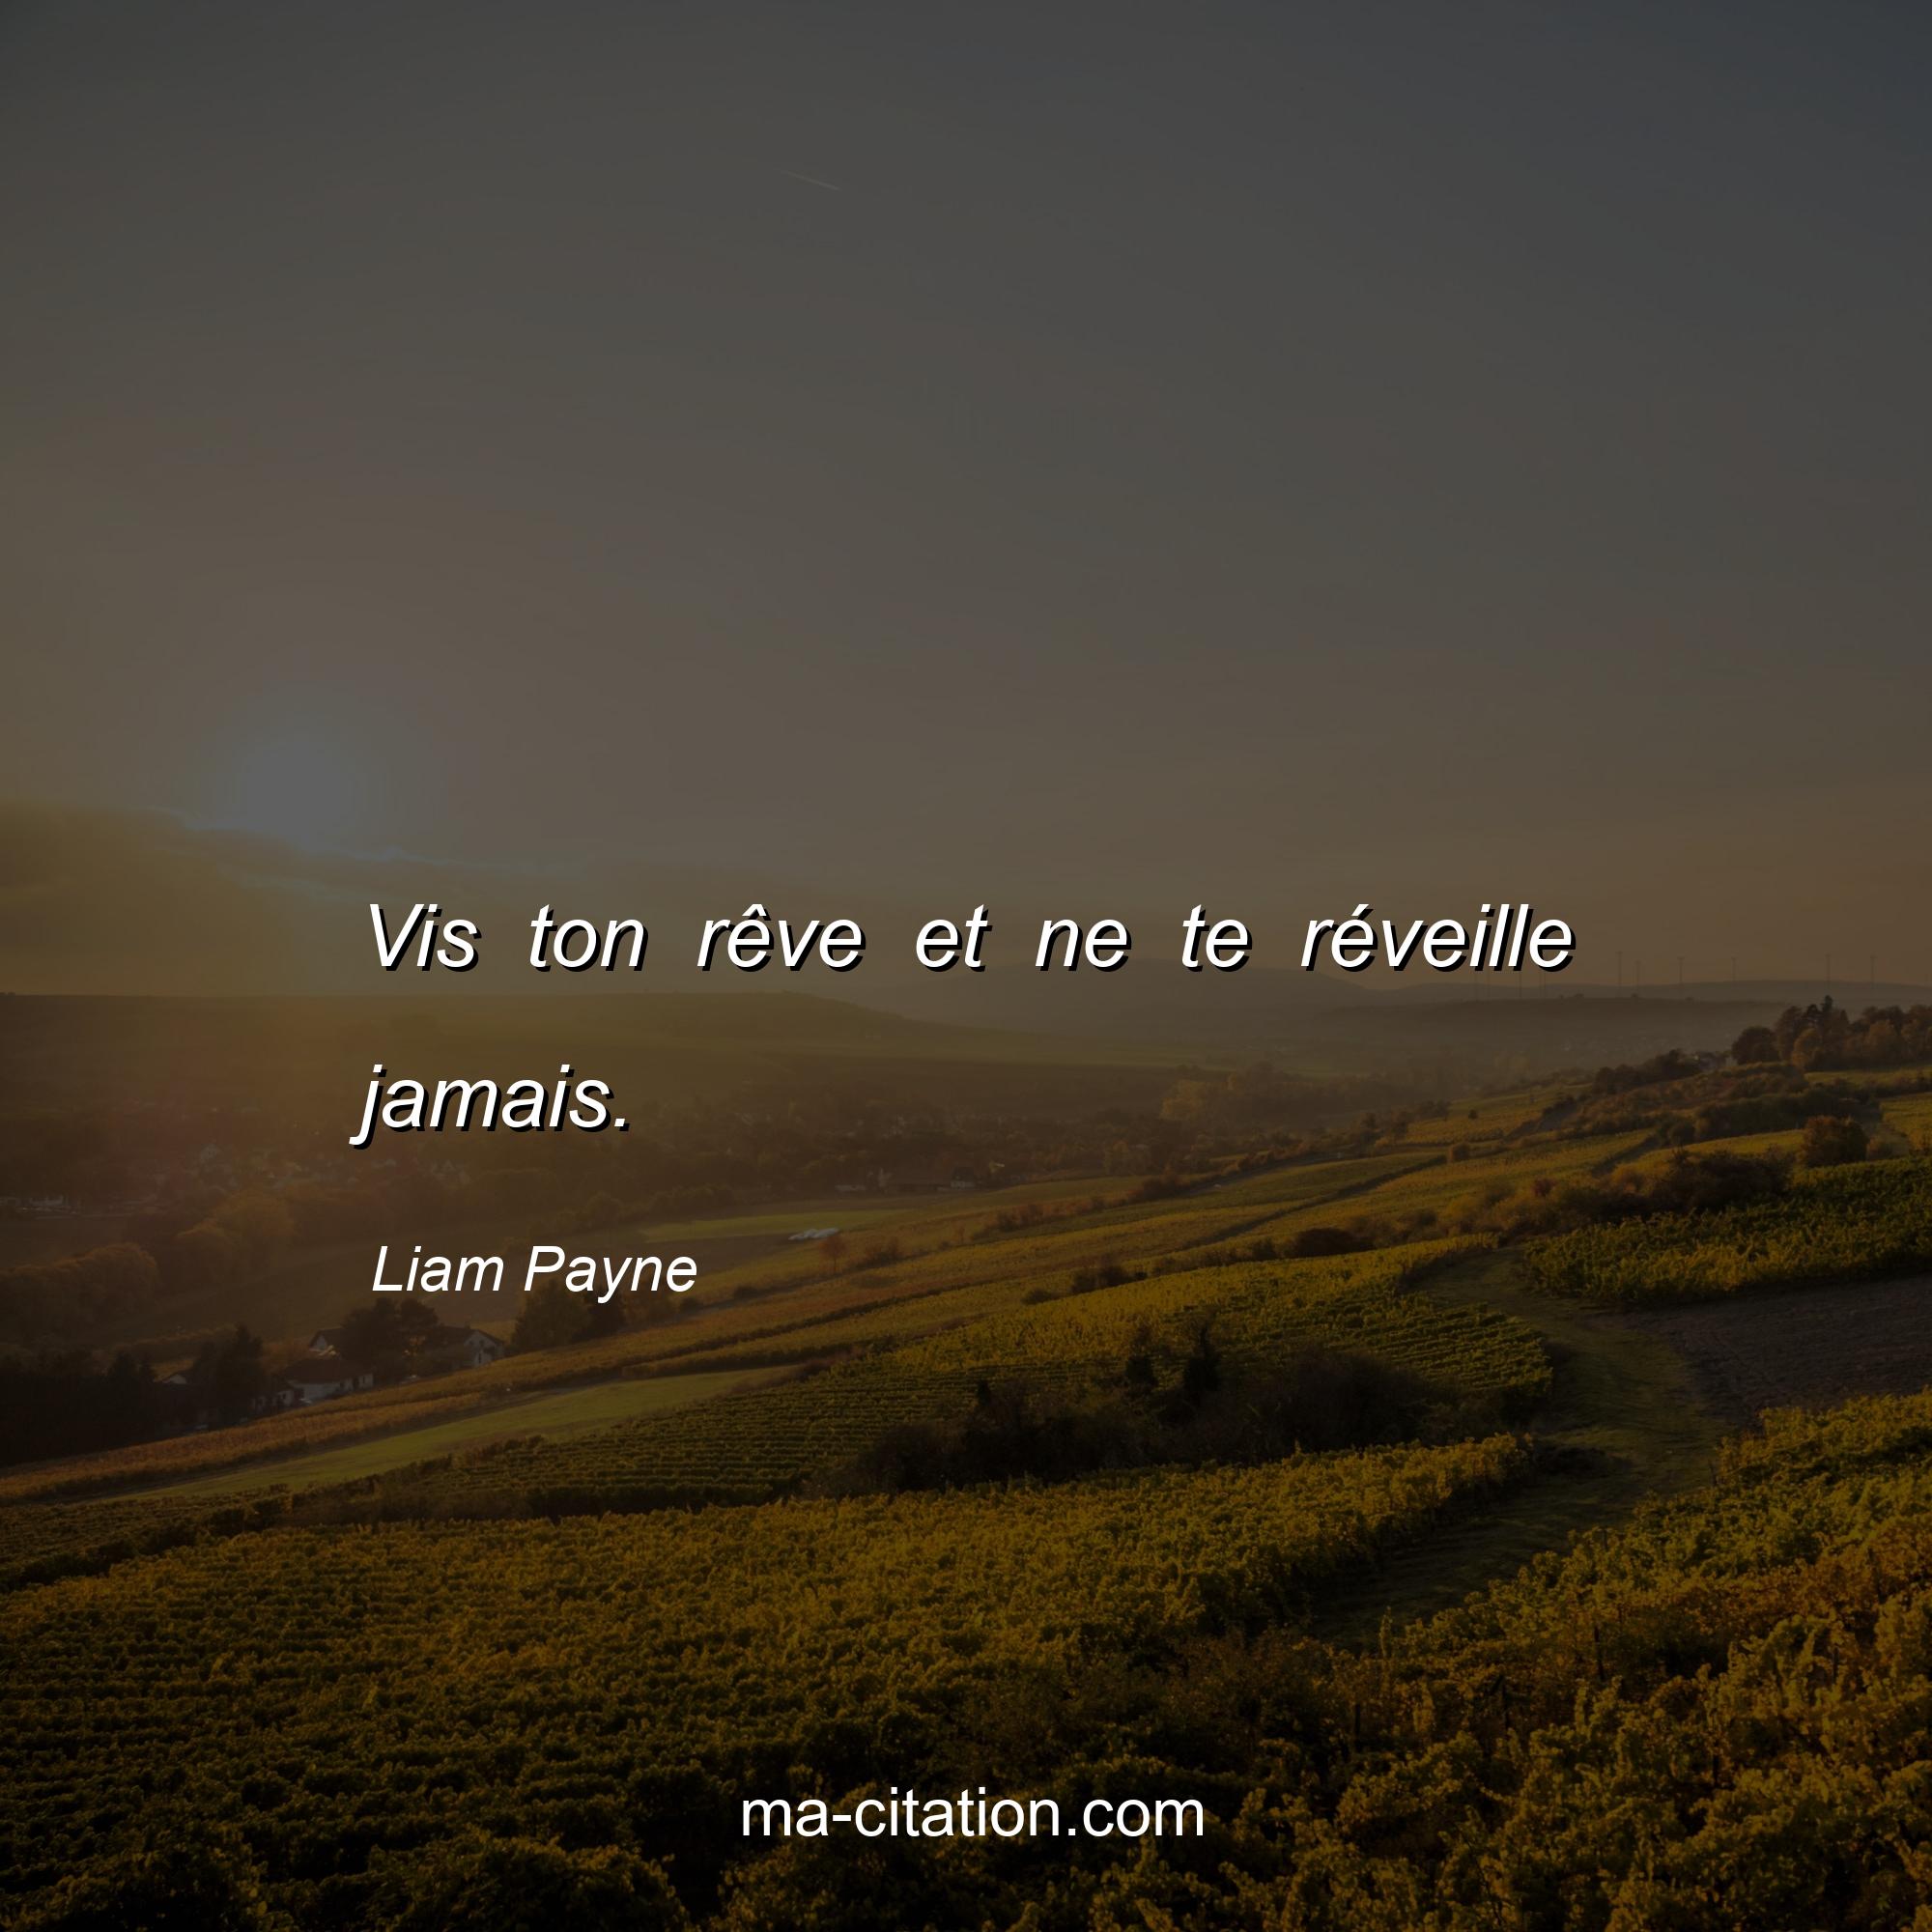 Liam Payne : Vis ton rêve et ne te réveille jamais.